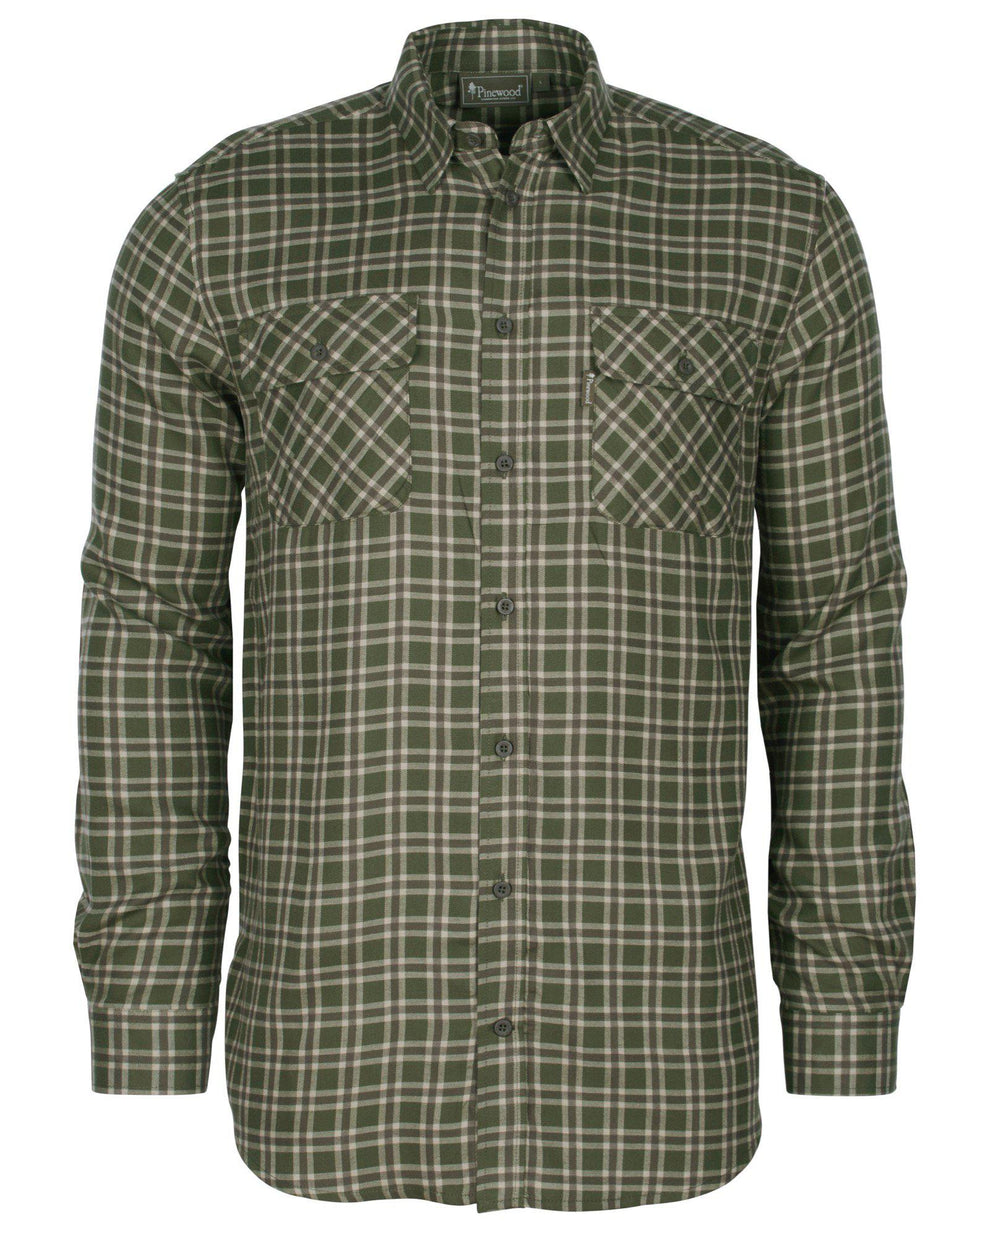 5433-764-01_Pinewood-Lappland-Wool-Shirt-Mens_Mossgreen-Light-Khaki